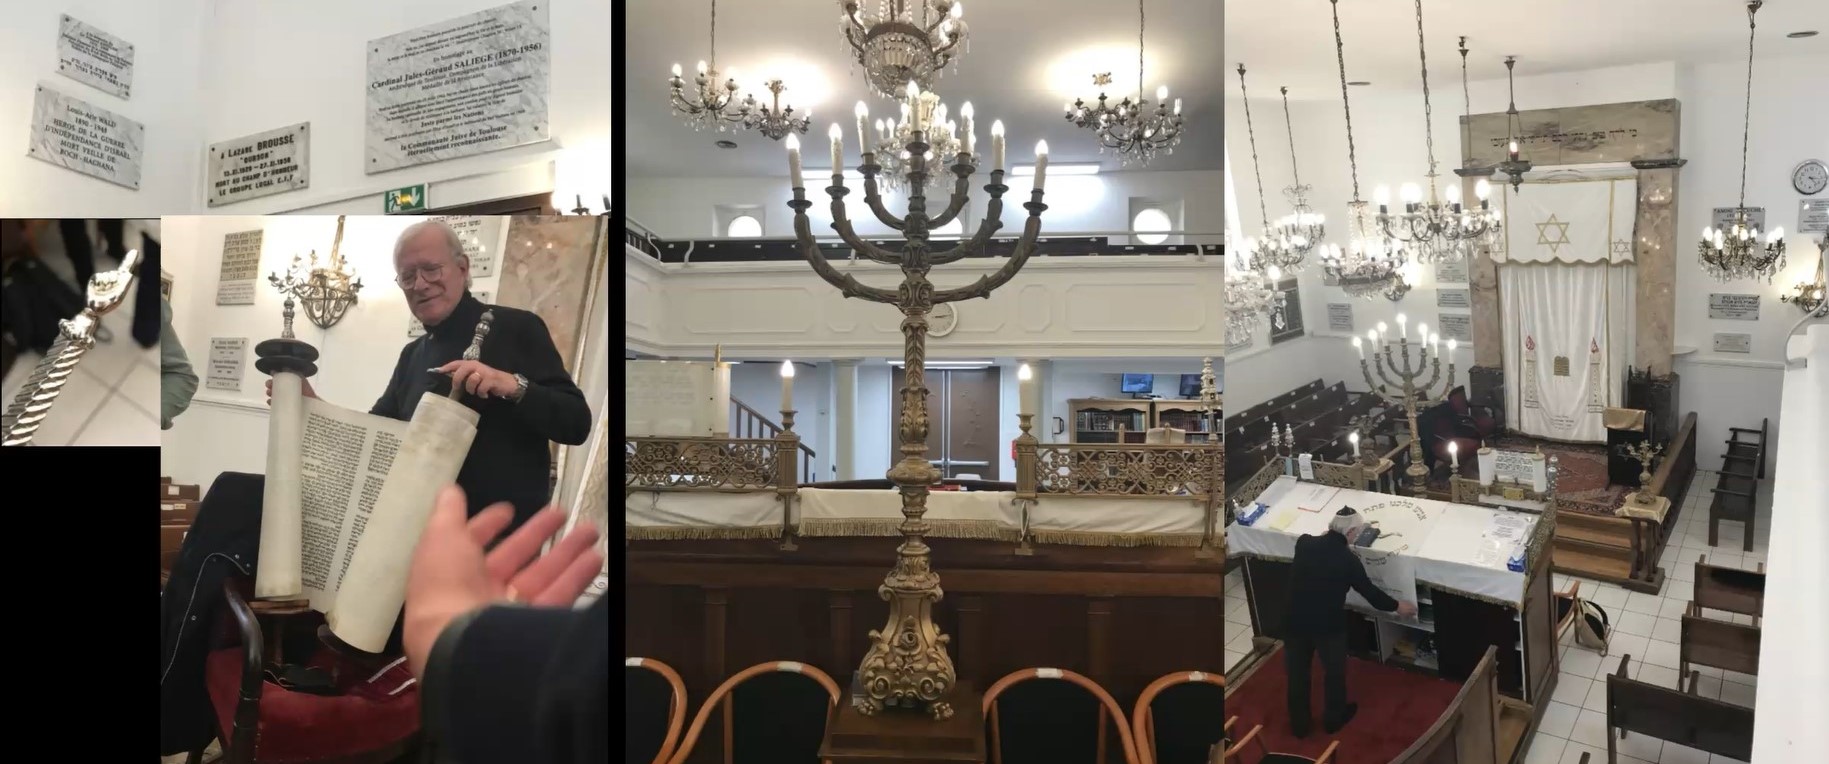 RESSOURCES/Synagogue Palaprat